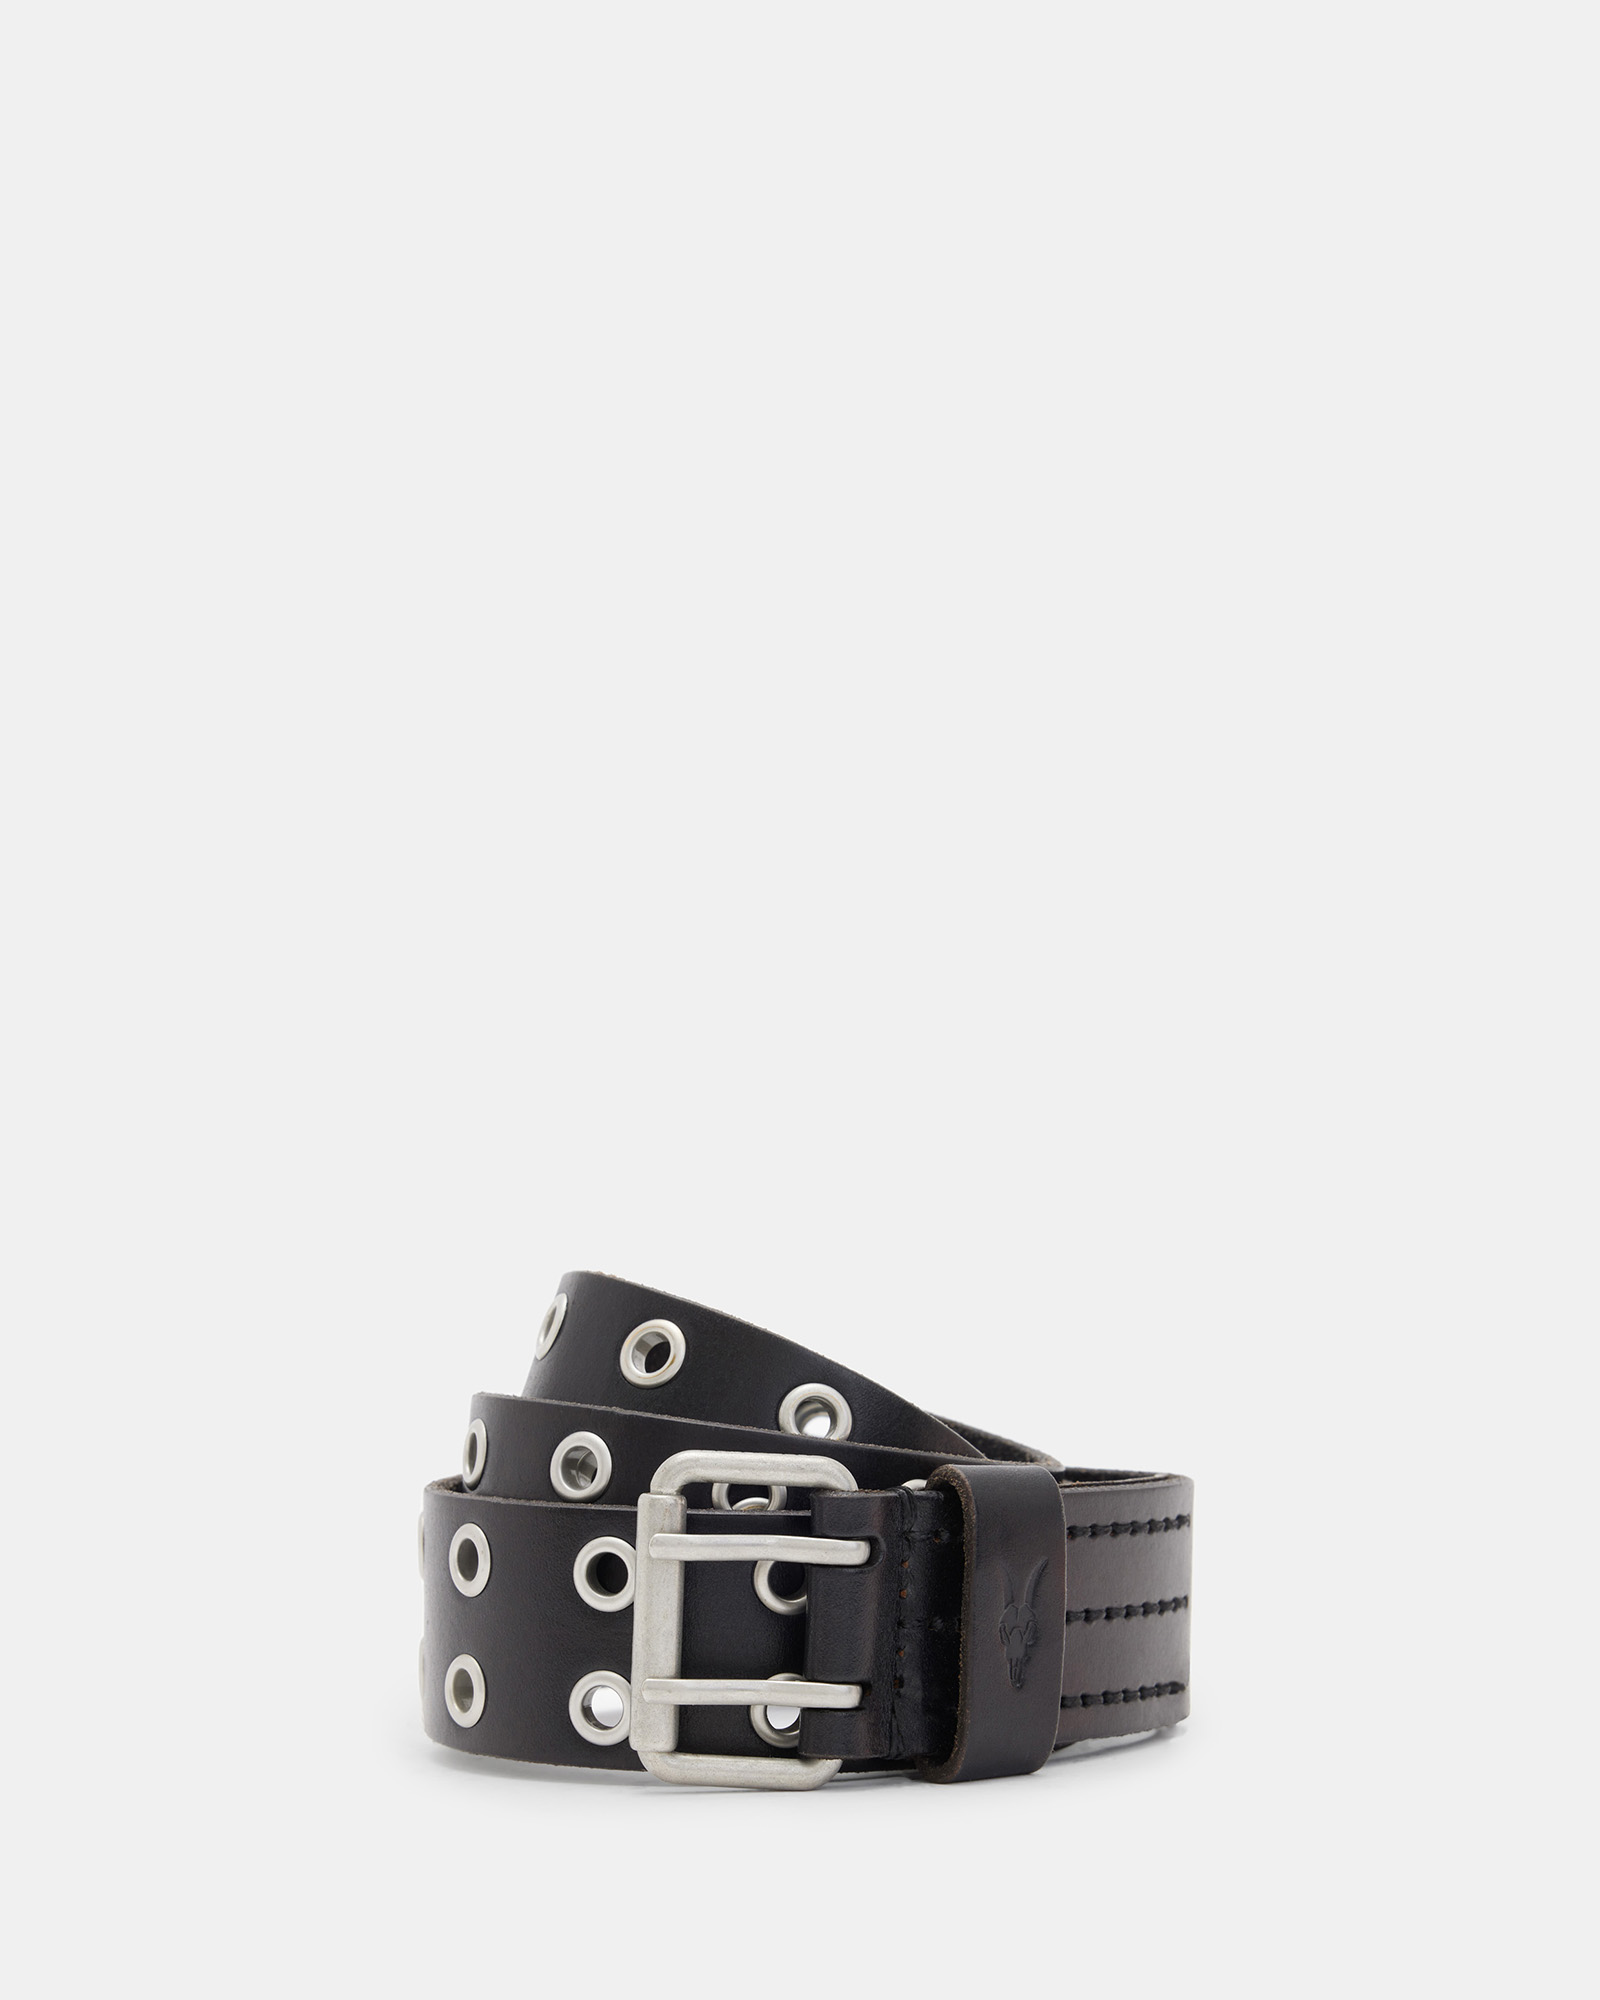 AllSaints Men's Sturge Leather Belt, Black, Size: 36